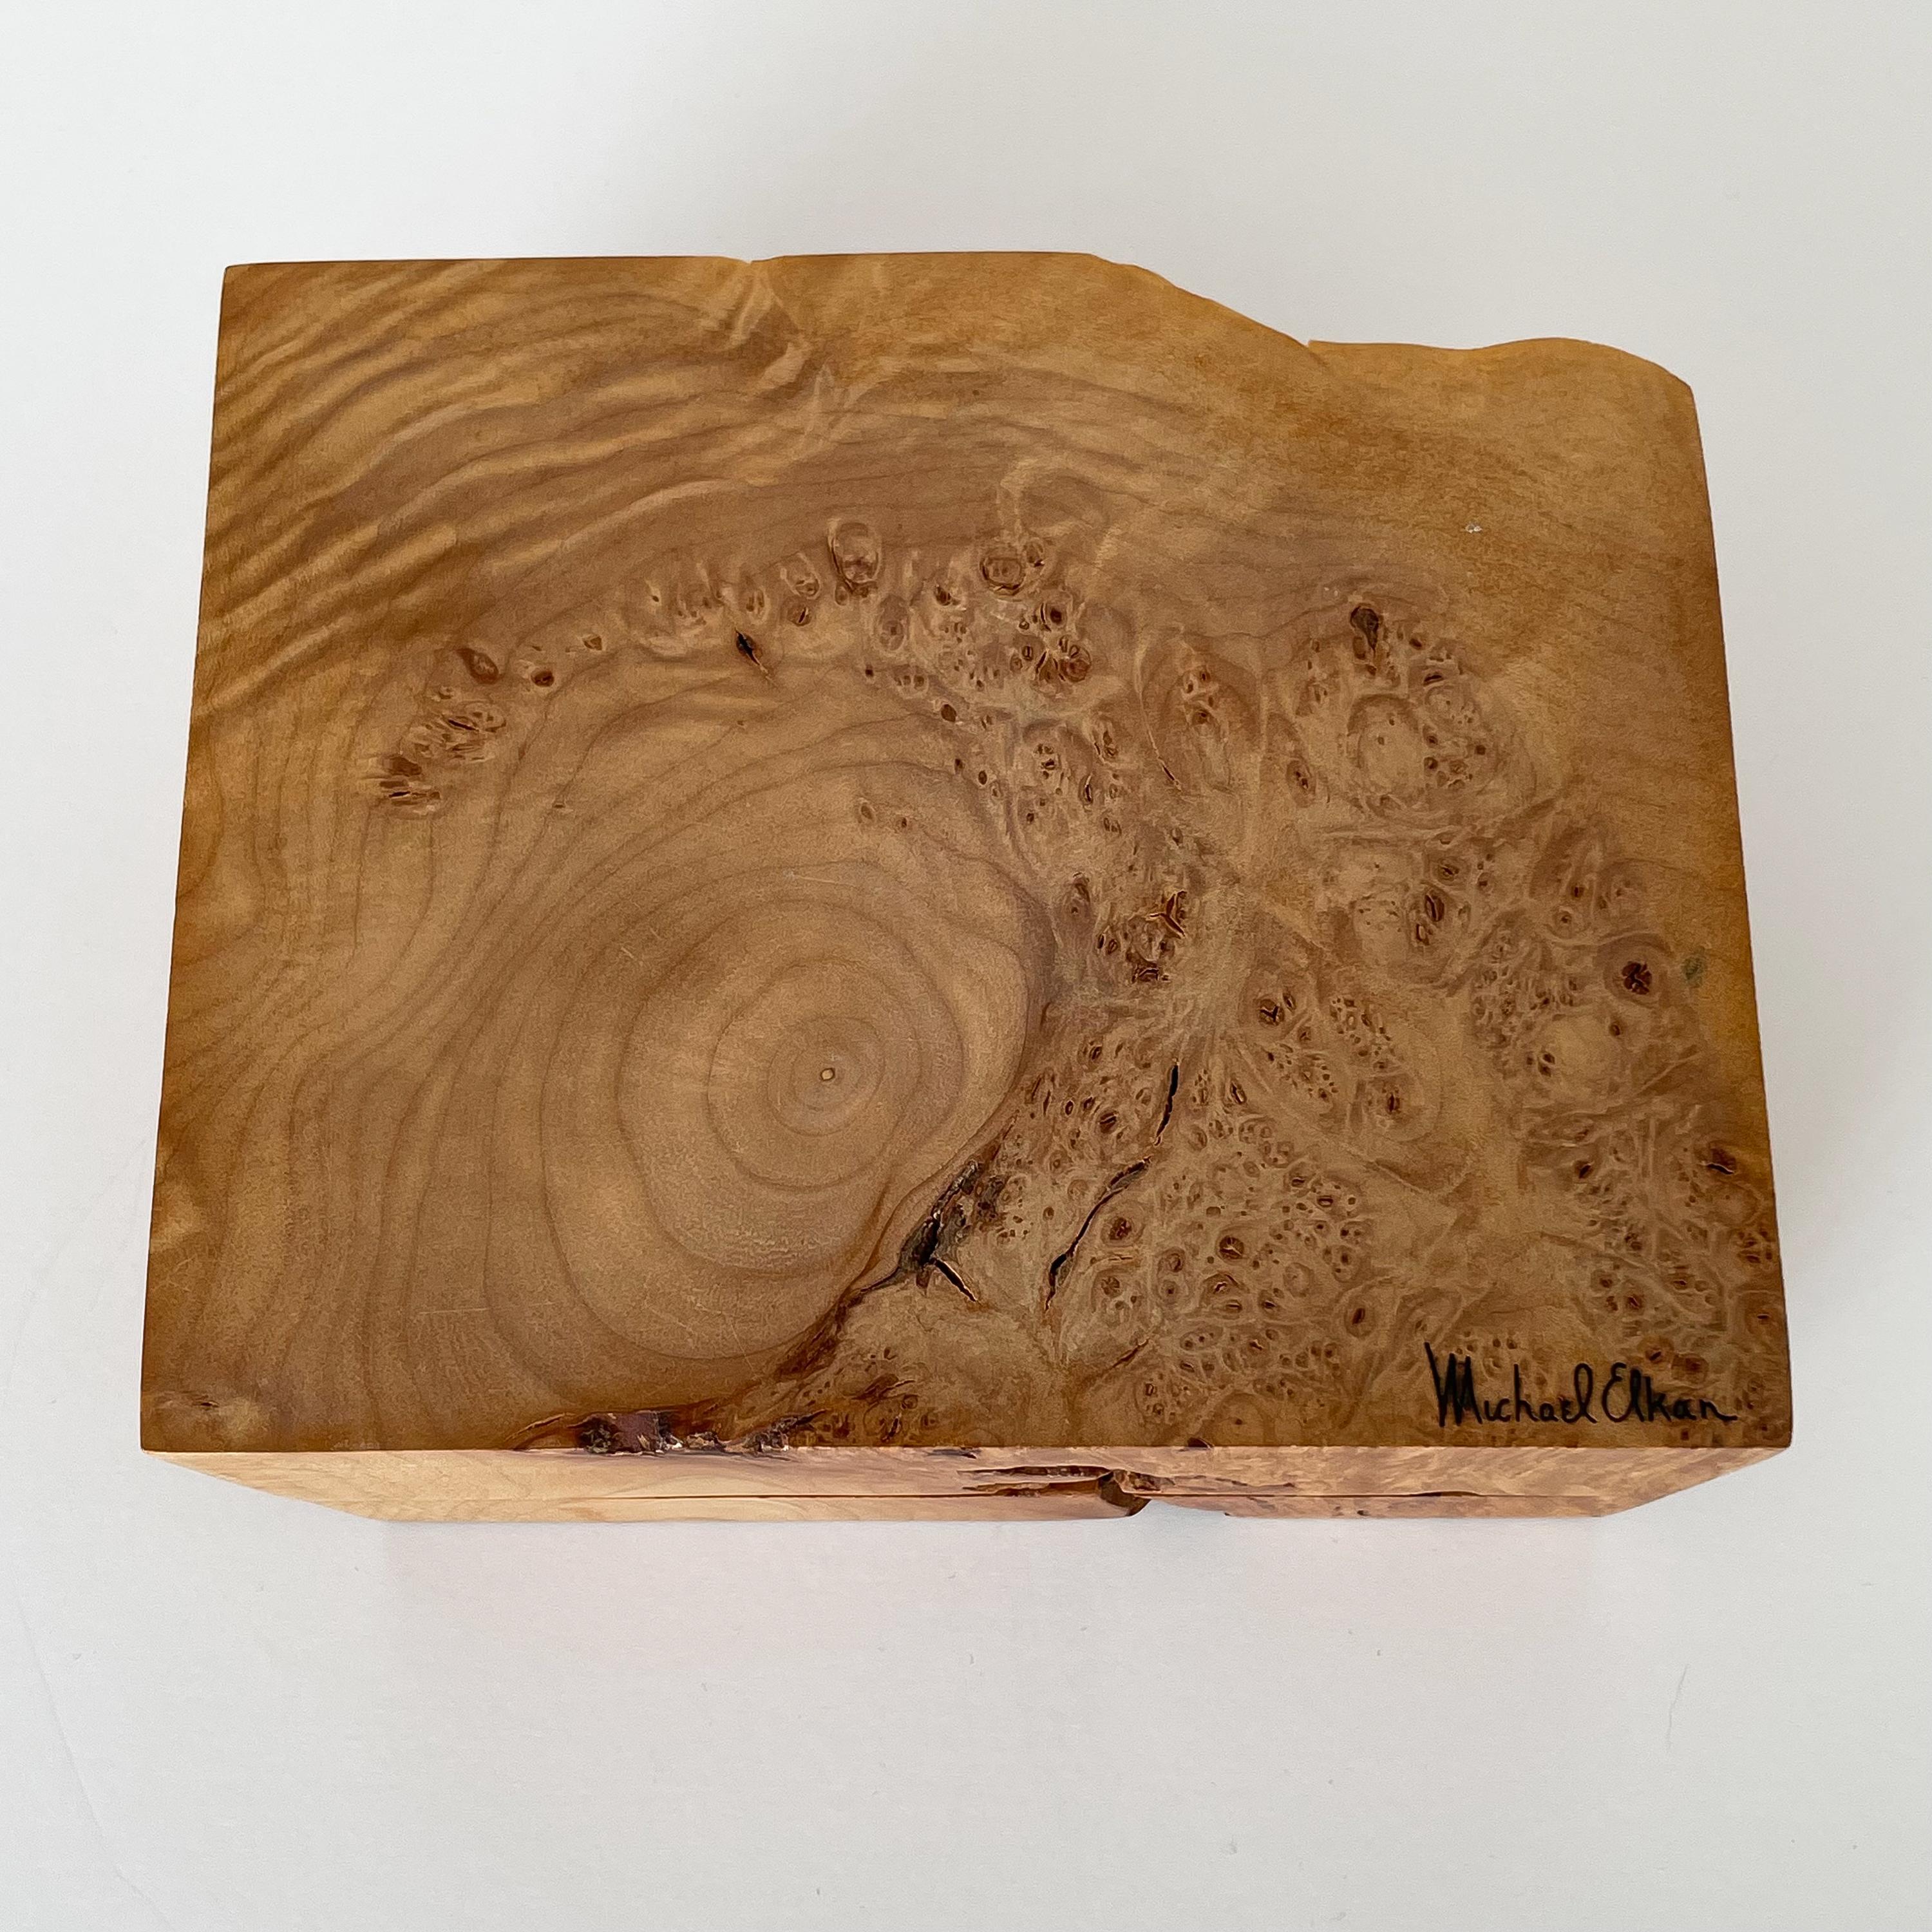 Michael Elkan Studio Craft Carved Burl Wood Box 4